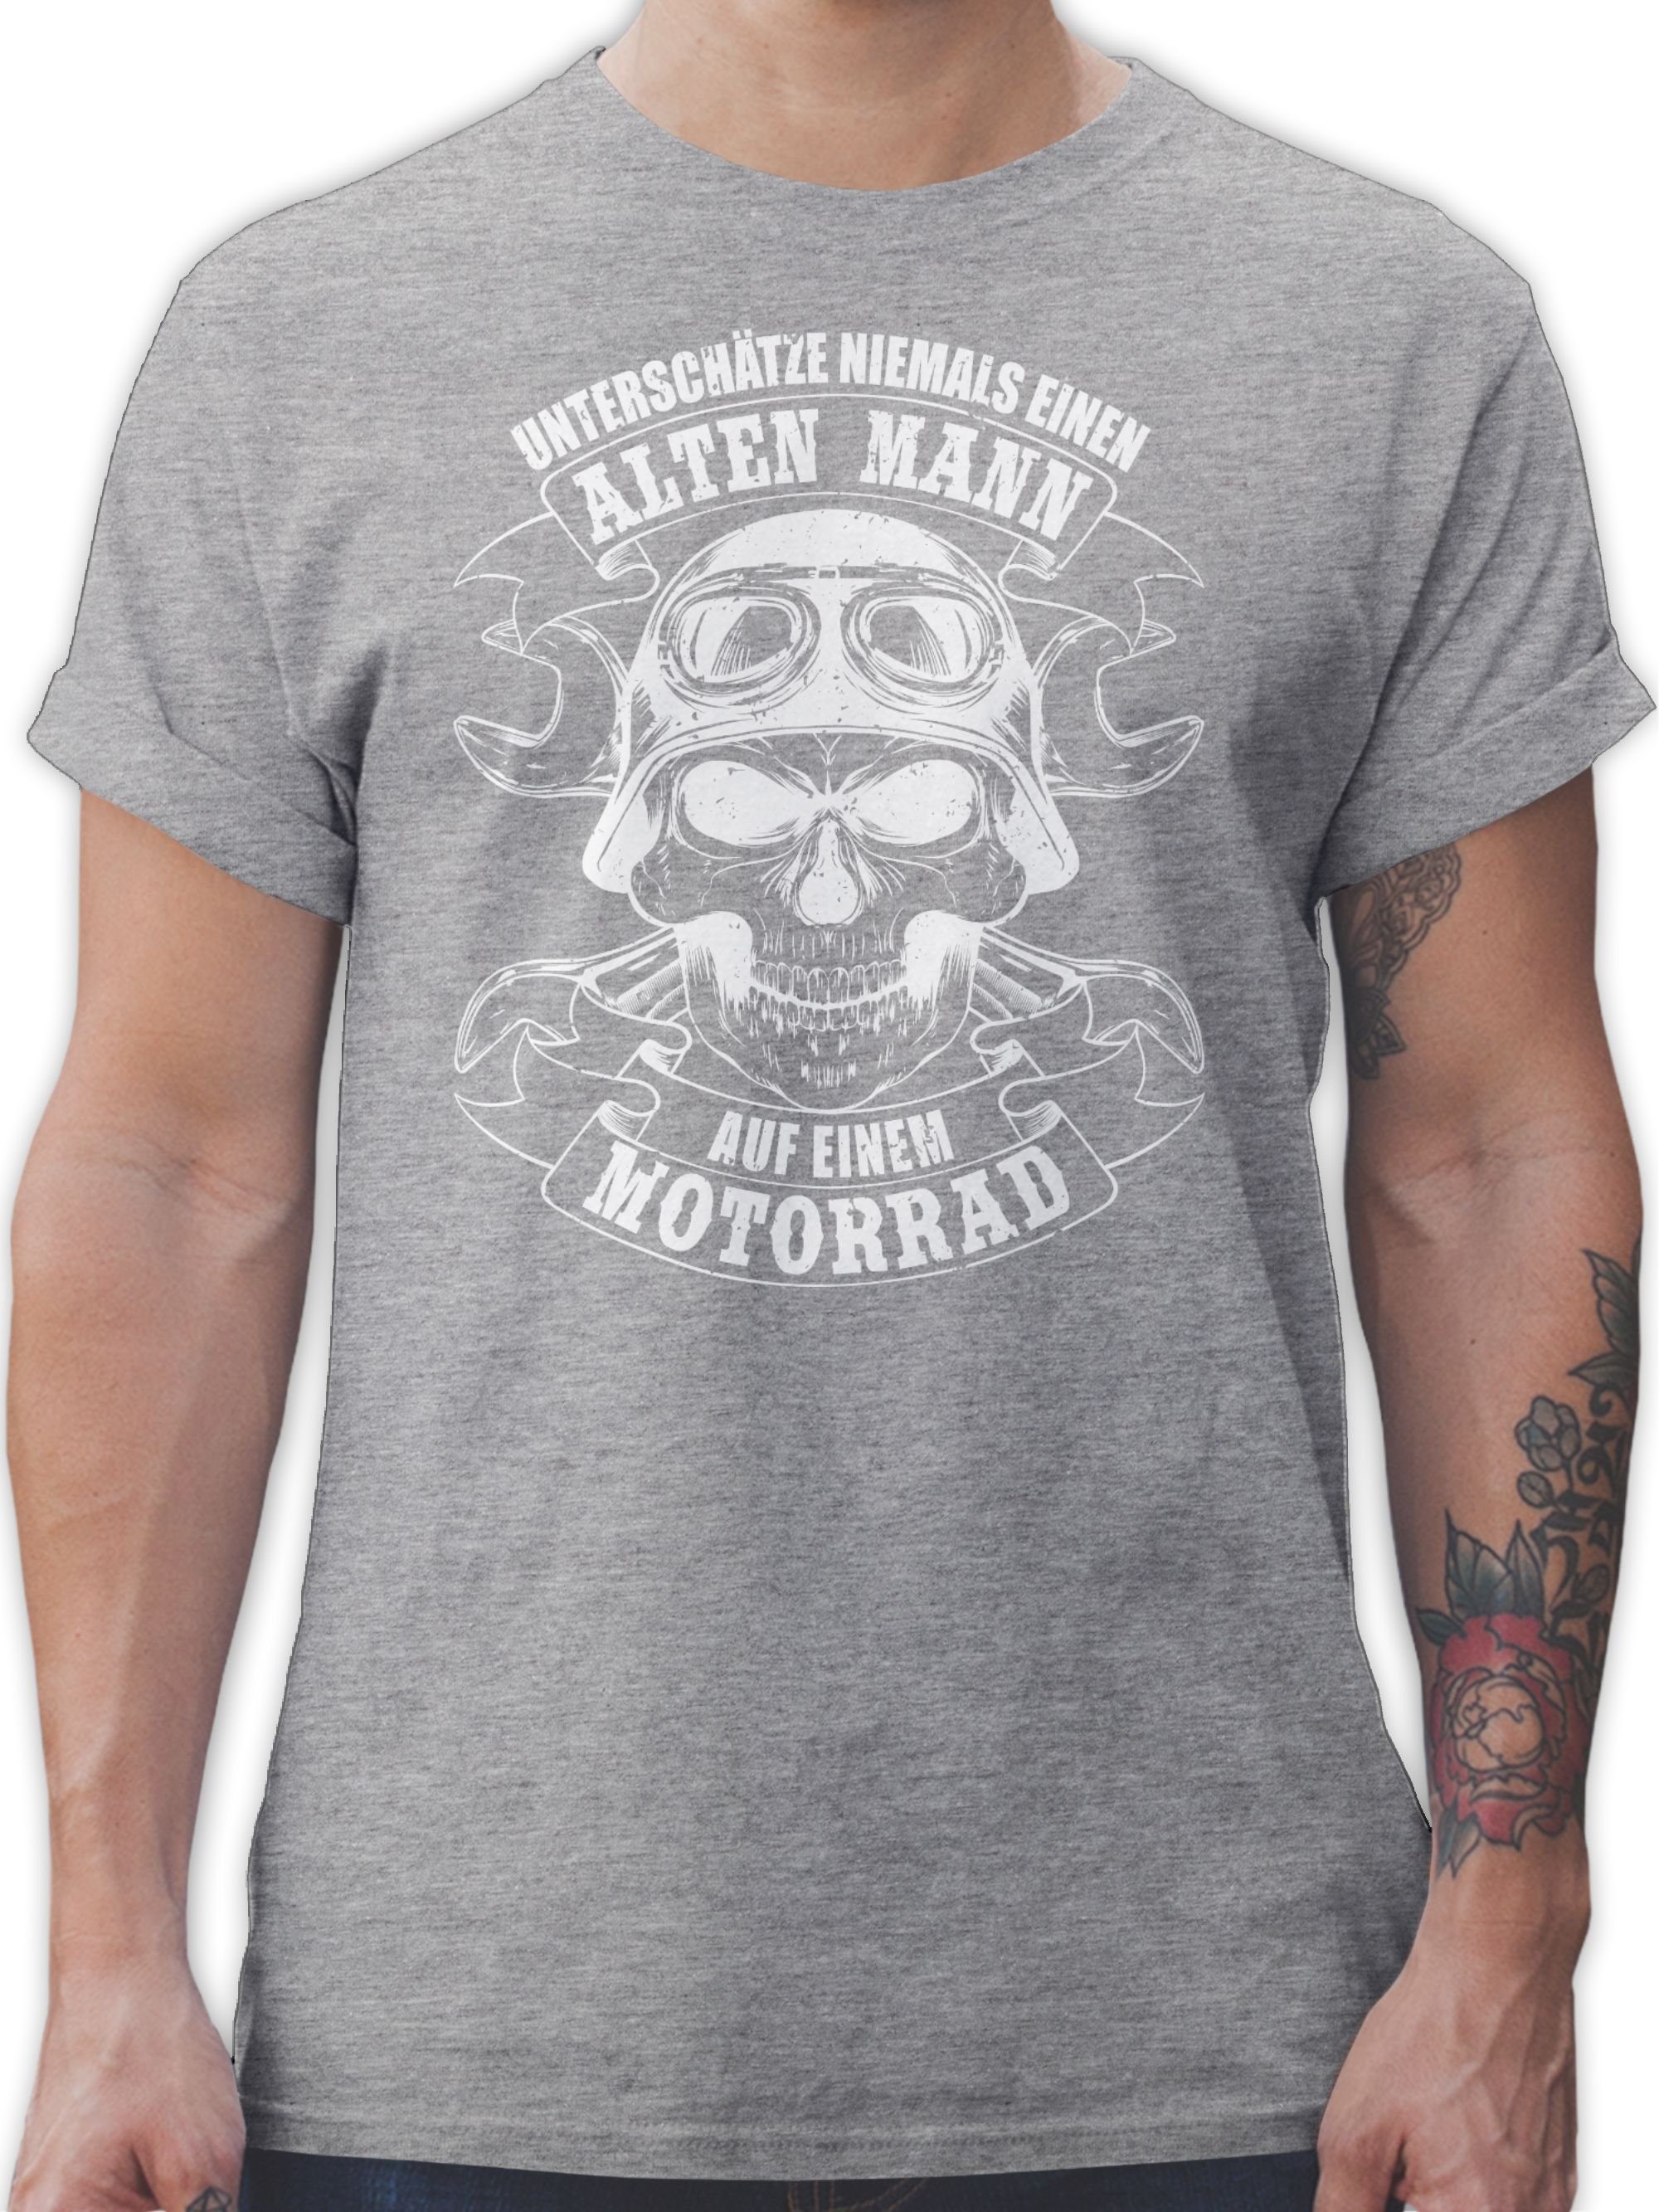 Shirtracer T-Shirt Unterschätze niemals einen alten Mann - weiß Motorrad Biker 3 Grau meliert